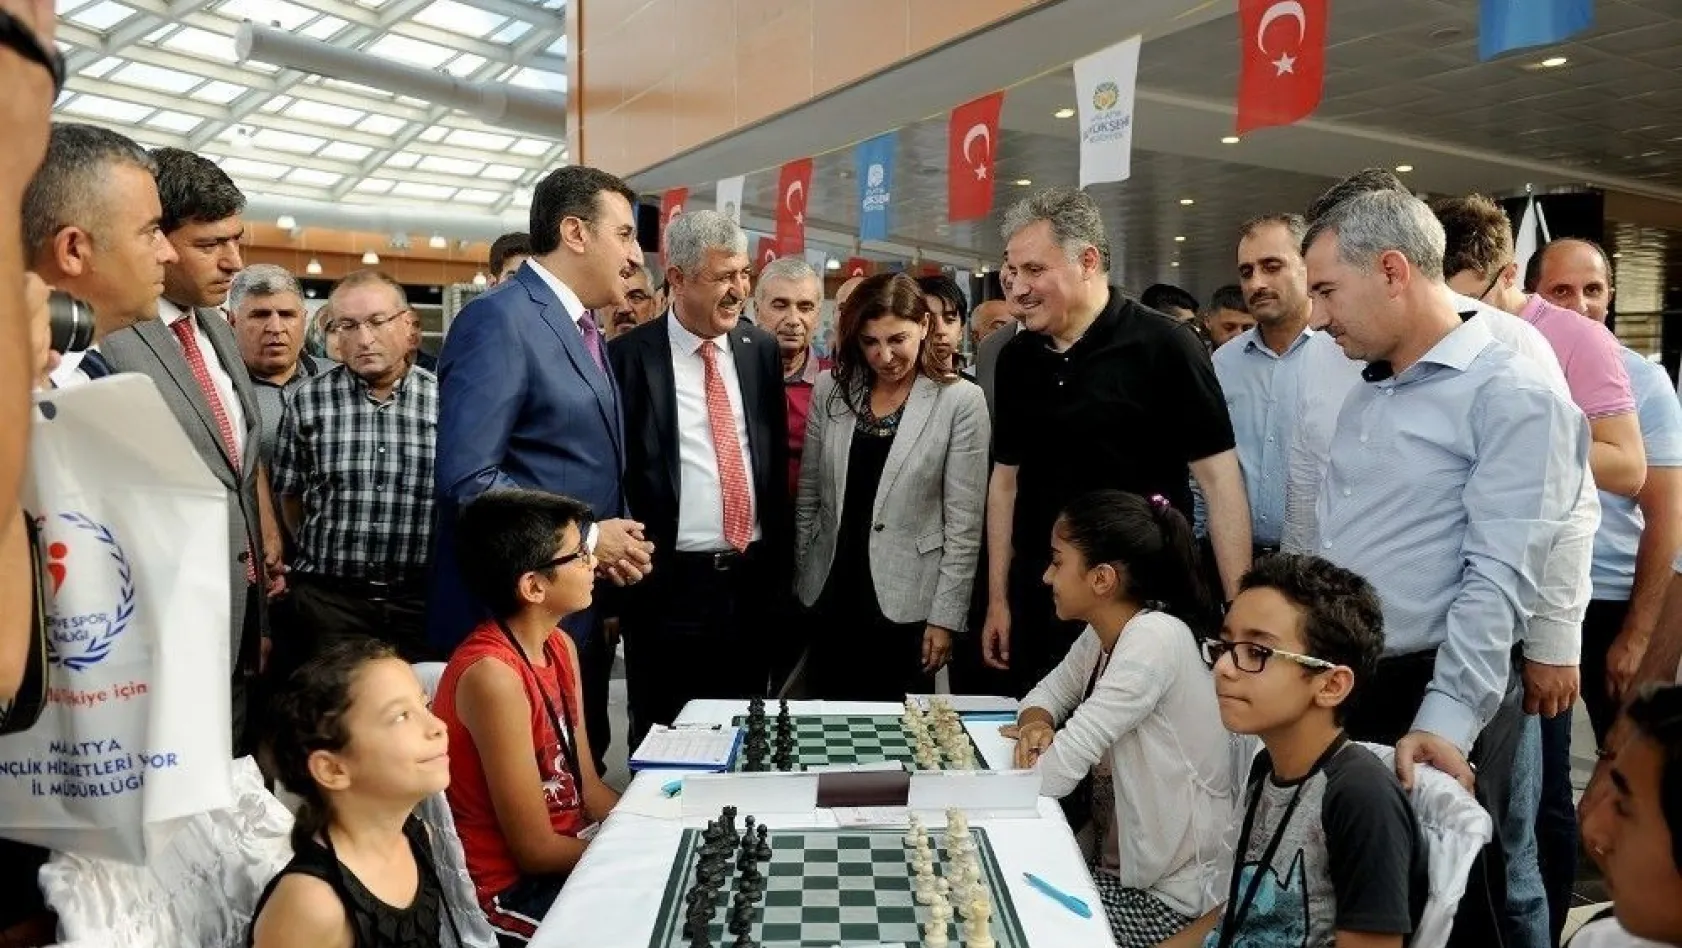 Uluslararası Altın Kayısı Satranç turnuvası başladı
